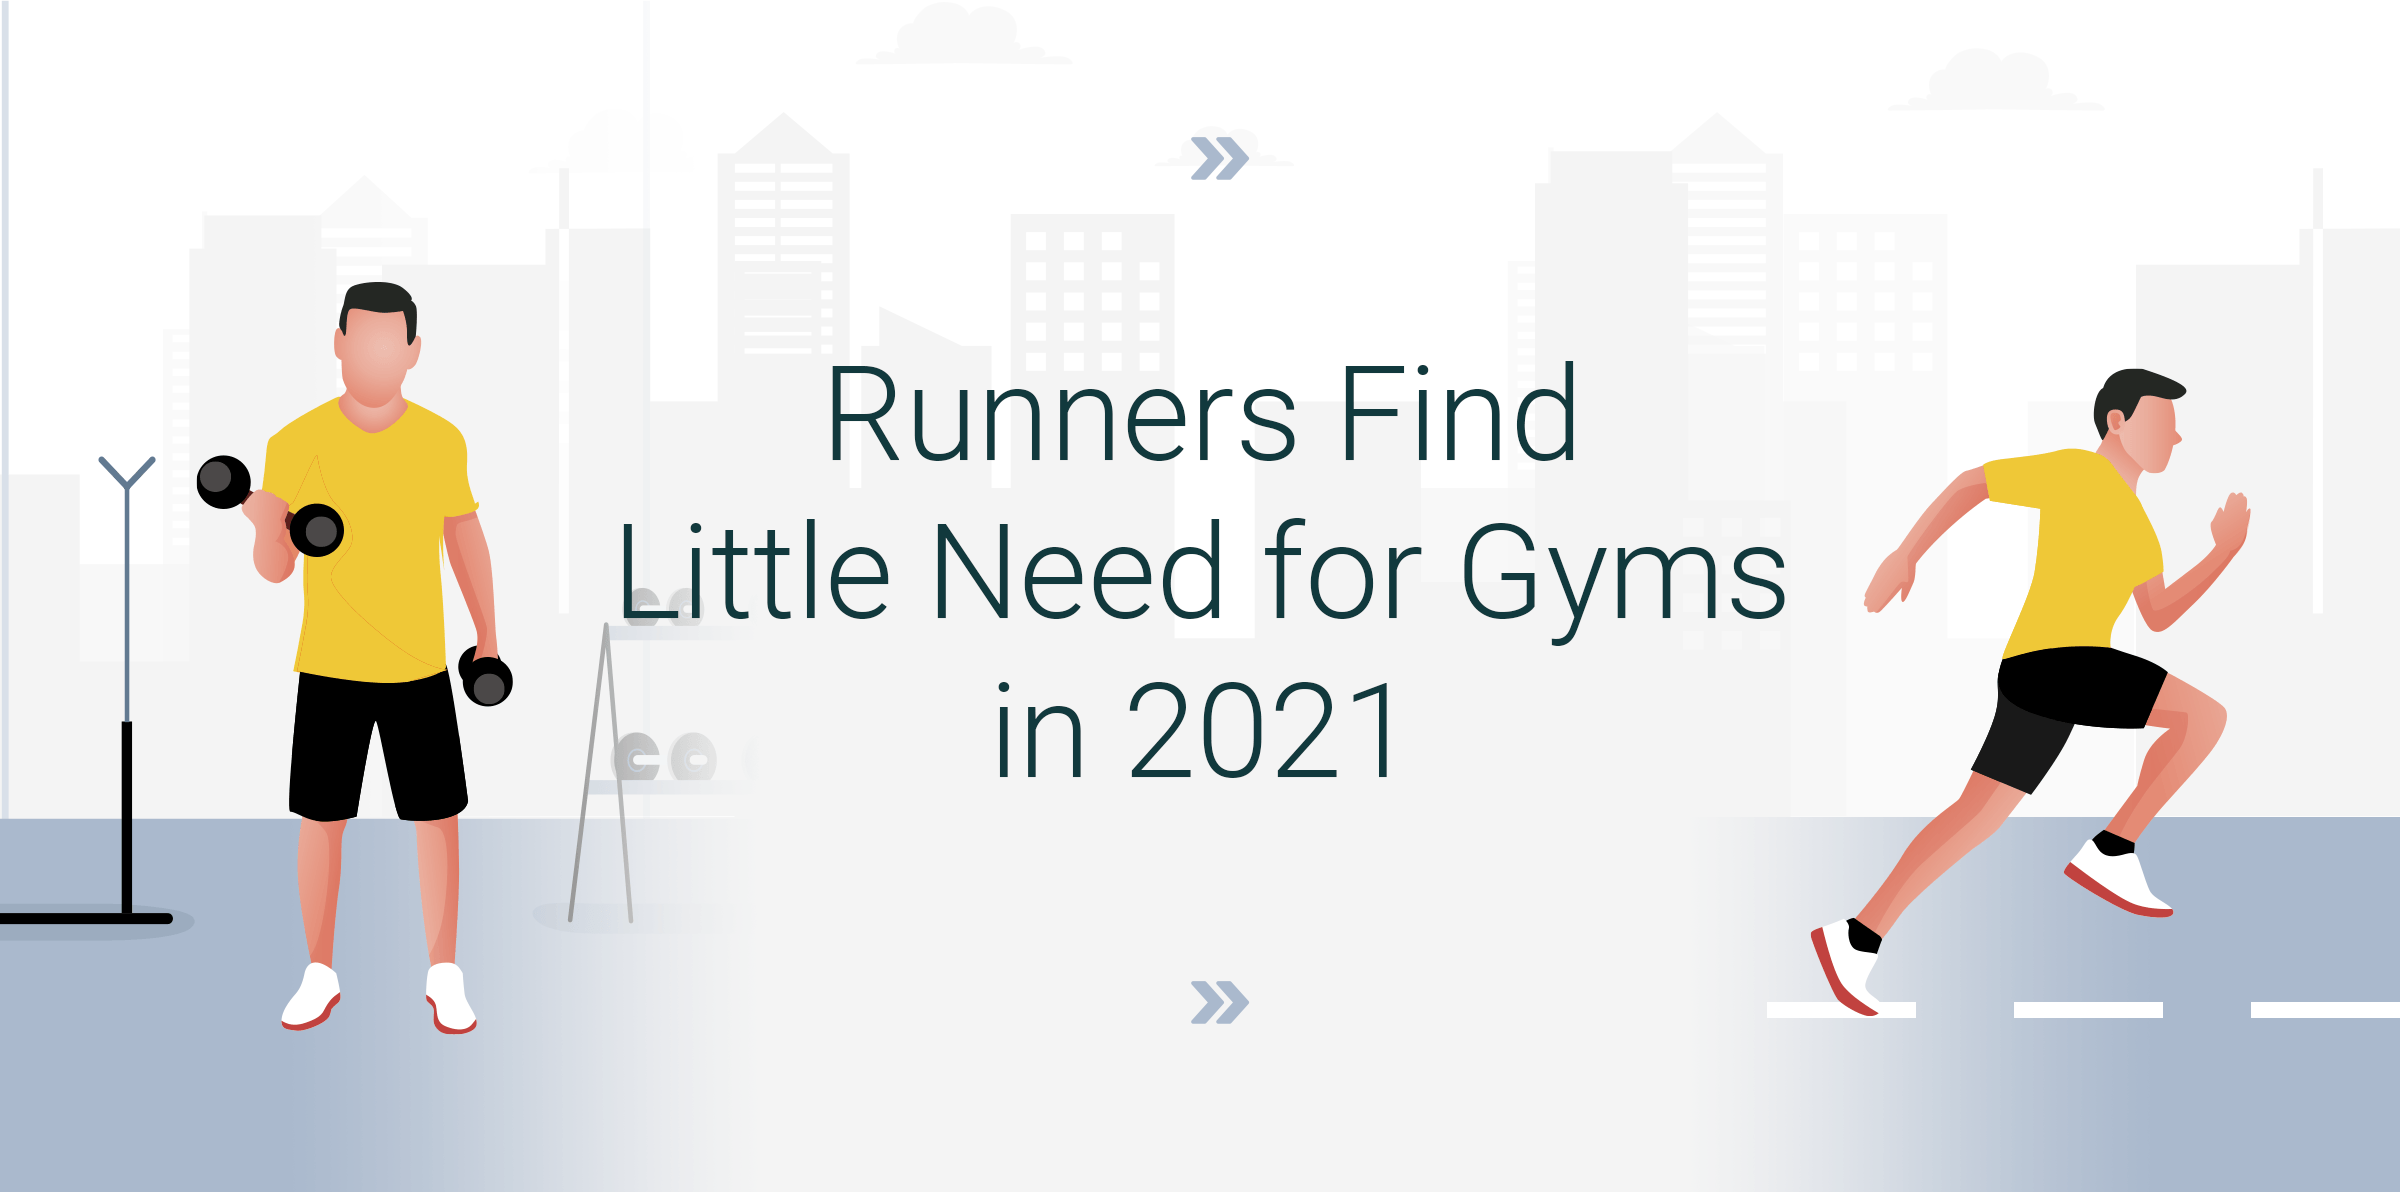 Los corredores no van a necesitar los gimnasios en 2021